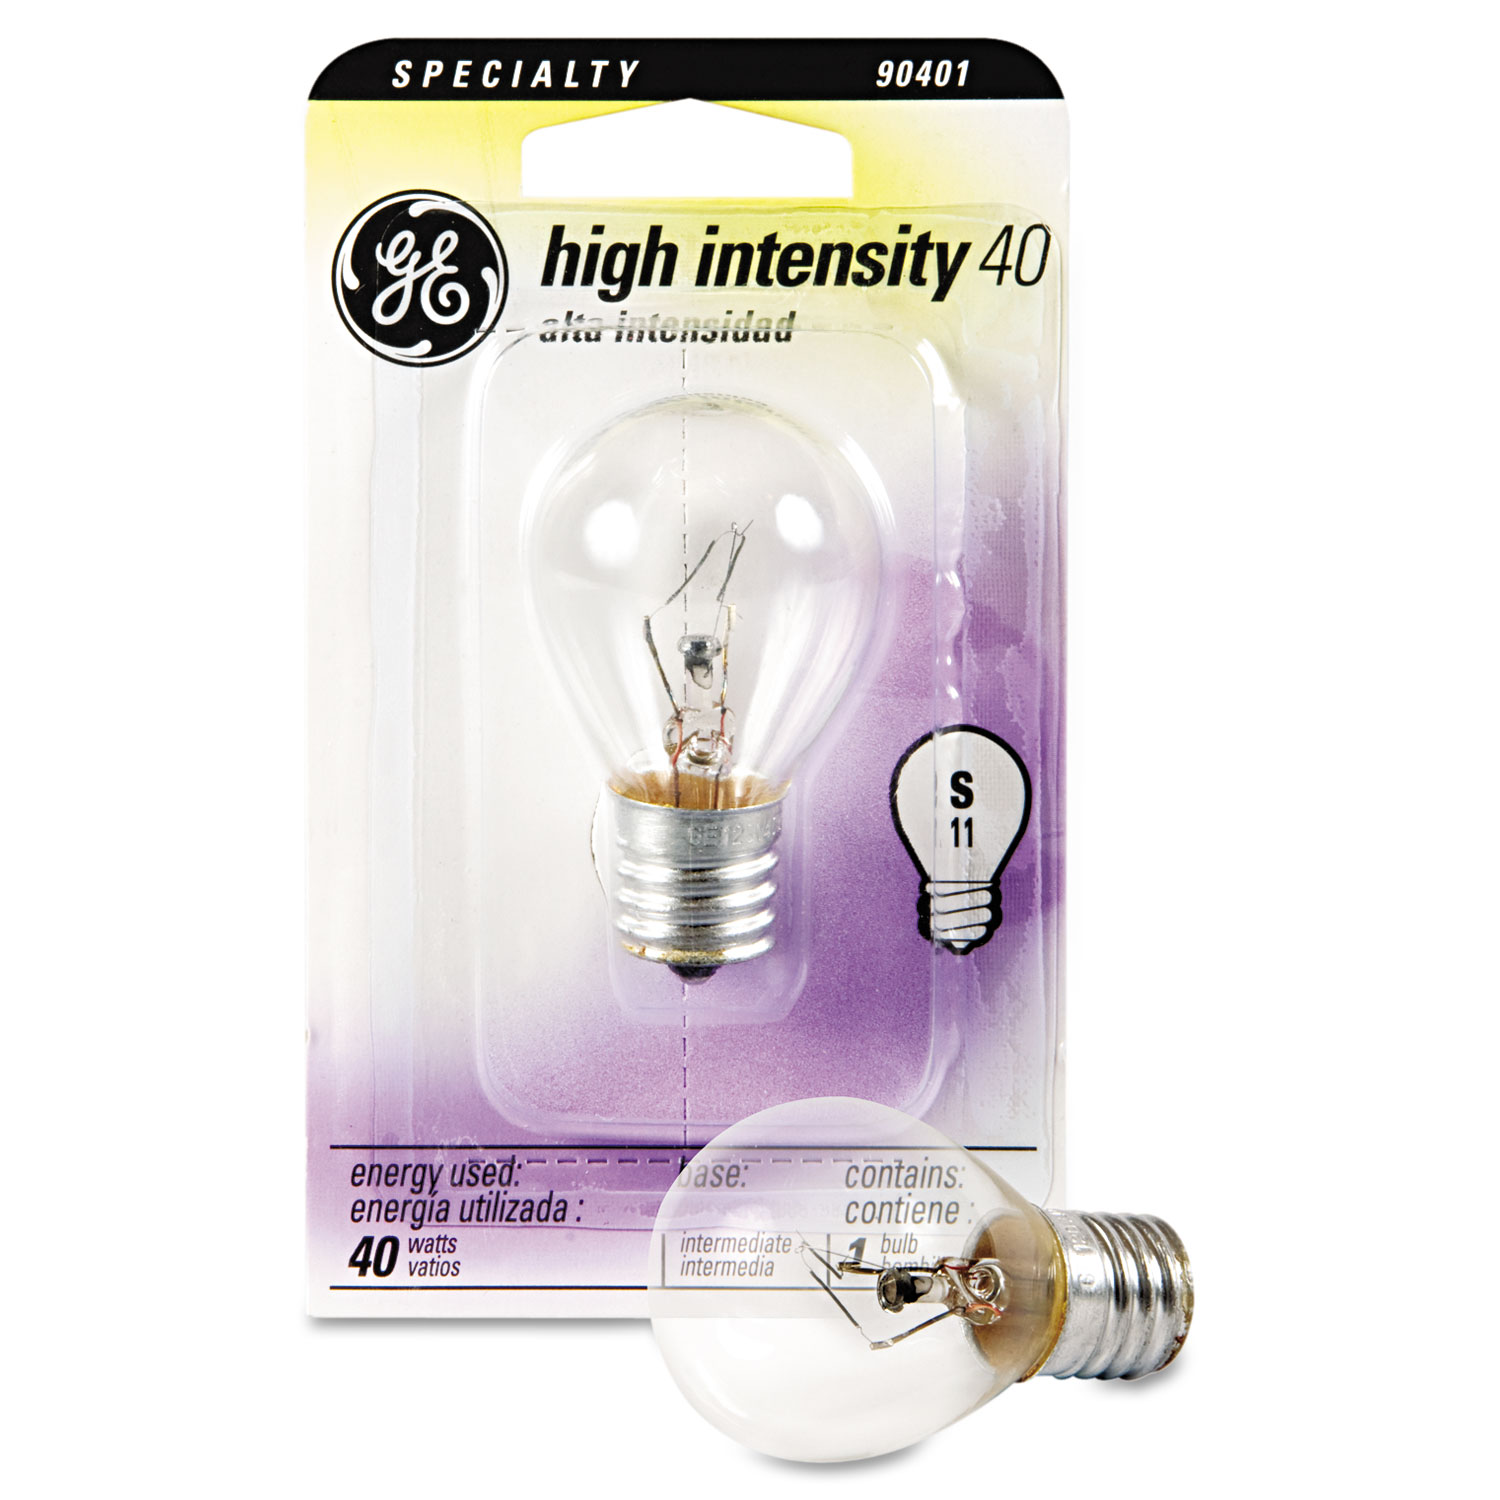 Appliance Light Bulbs in Specialty Light Bulbs 